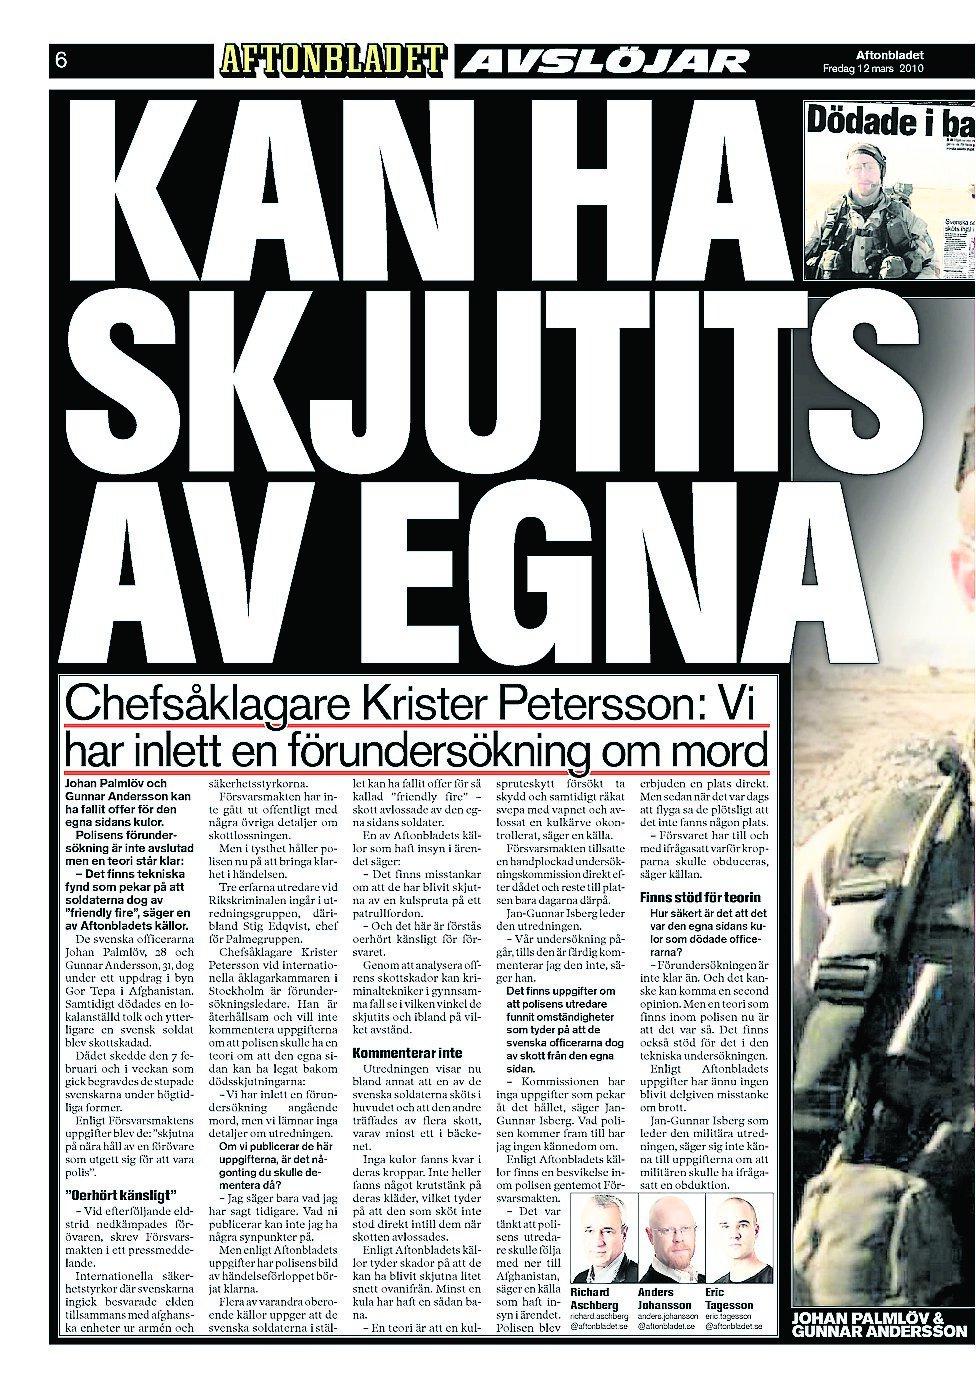 12–14 mars 2010 Aftonbladet avslöjar att de två svenska officerare som sköts till döds i Afghanistan kan ha skjutits av sina egna. Försvarsmakten har stoppat polisens utredare från att följa med till Afghanistan och efter en månad har Försvarsmakten inte överlämnat viktiga bevis till polisen.